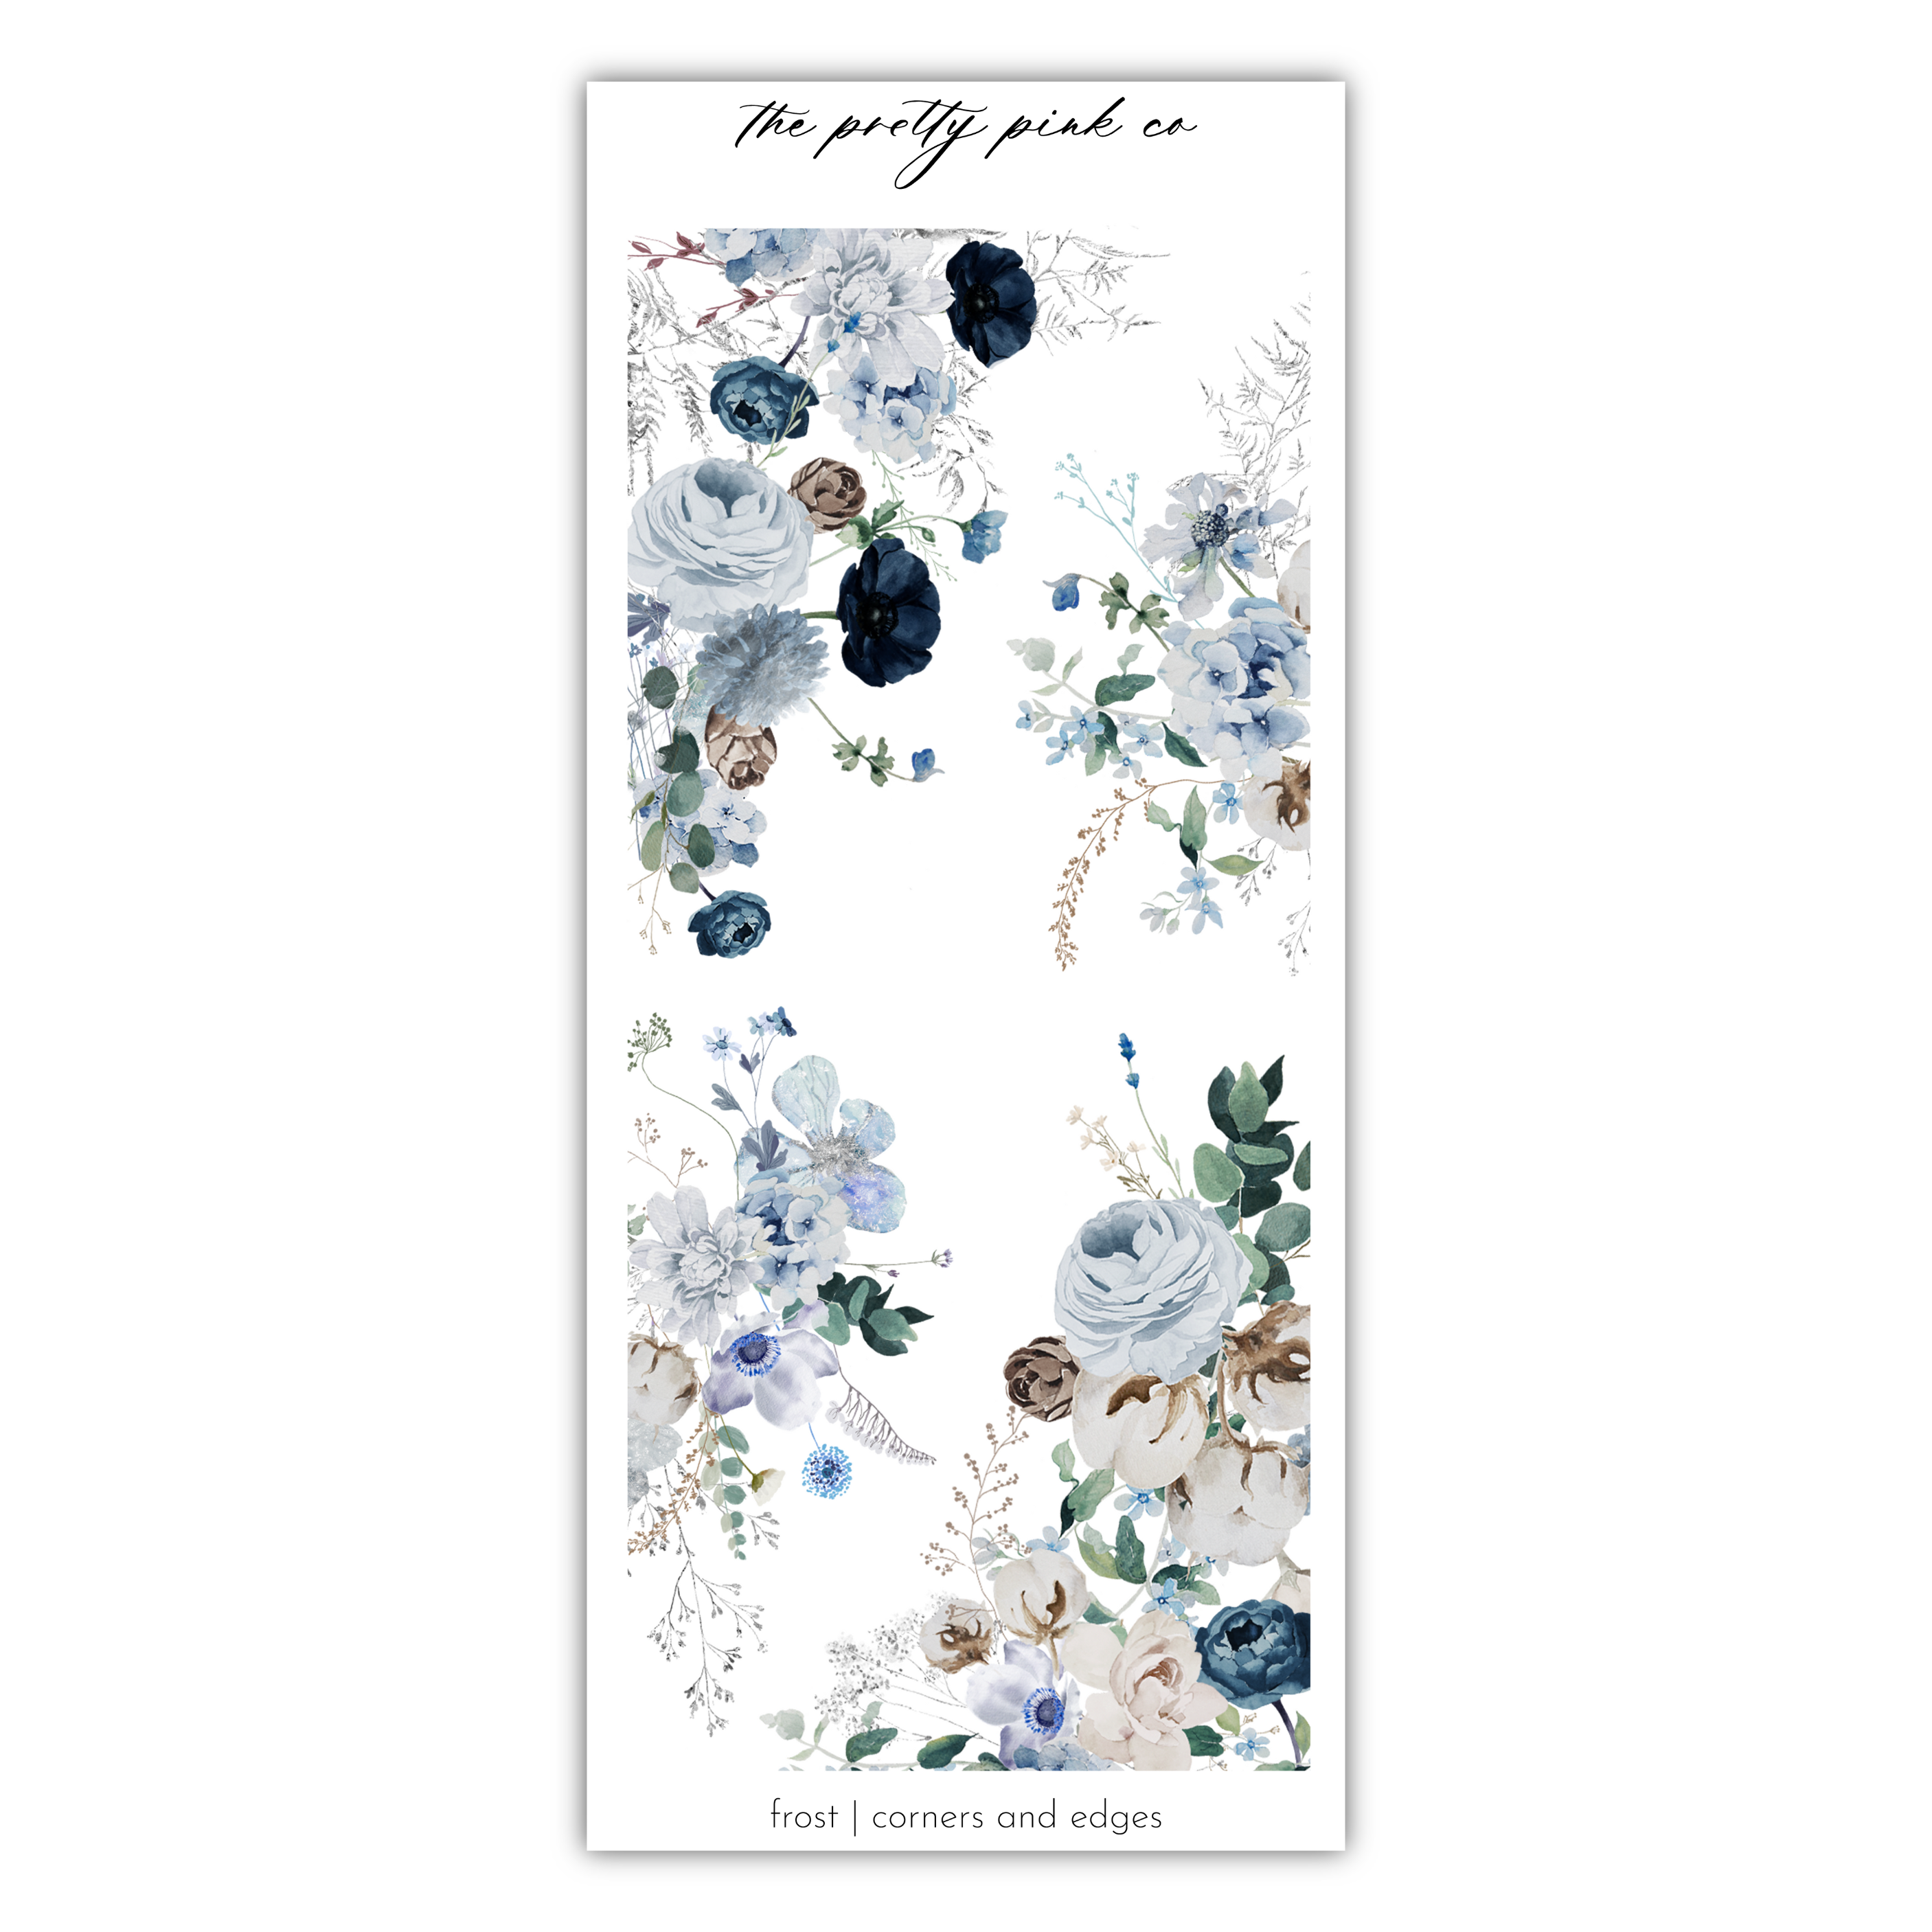 Frost | Decorative Kit Bundle